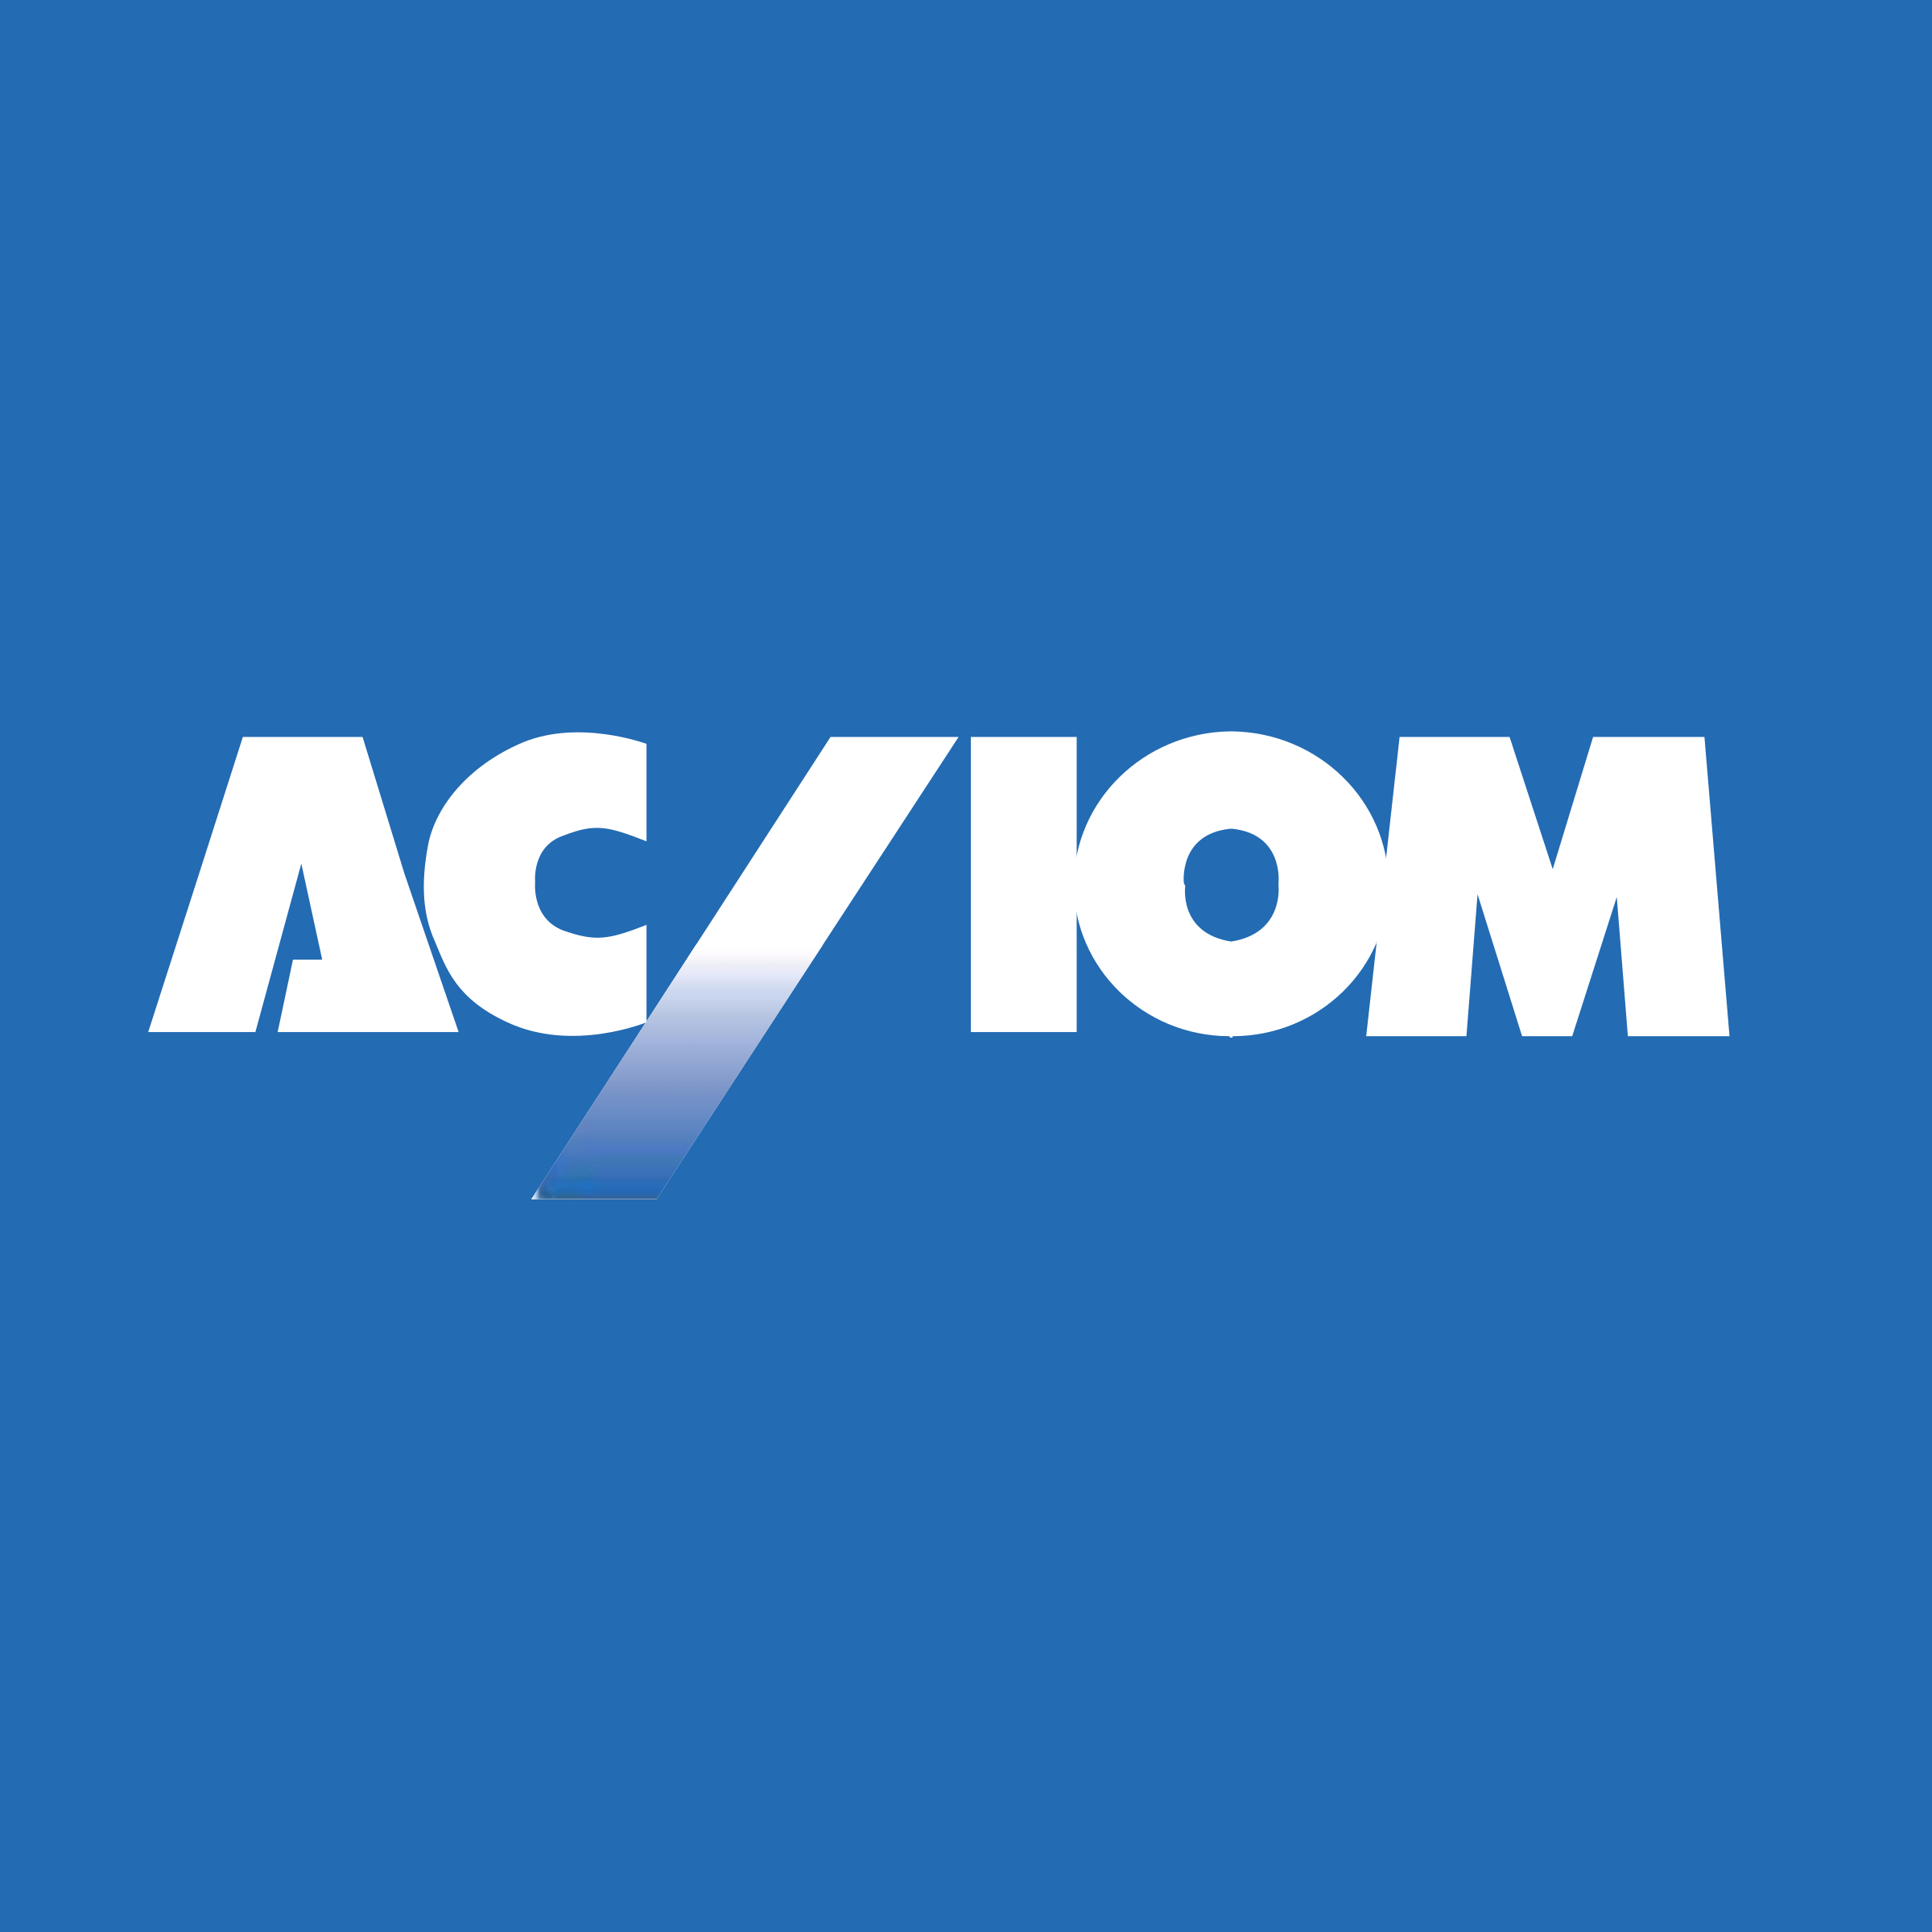 Acxiom Logo - Acxiom Logo PNG Transparent & SVG Vector - Freebie Supply